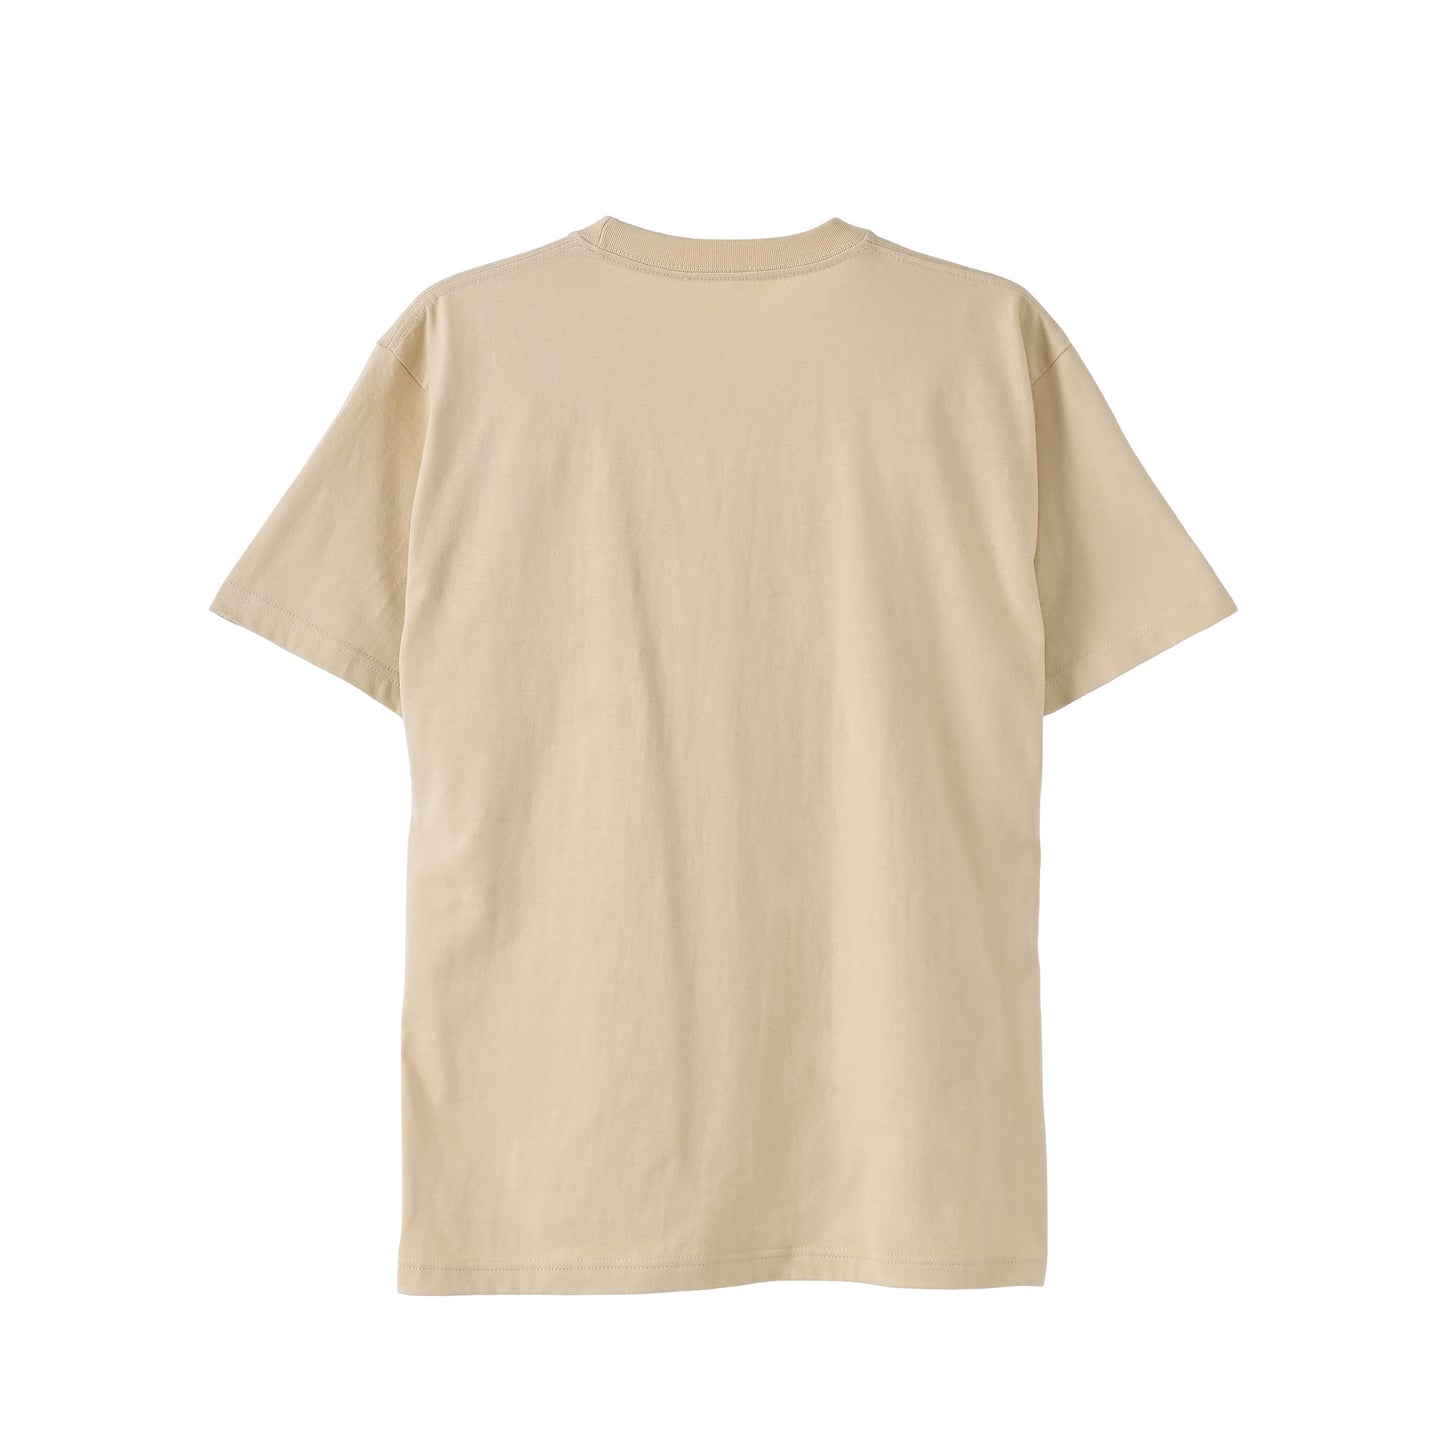 Pastel color T-shirt